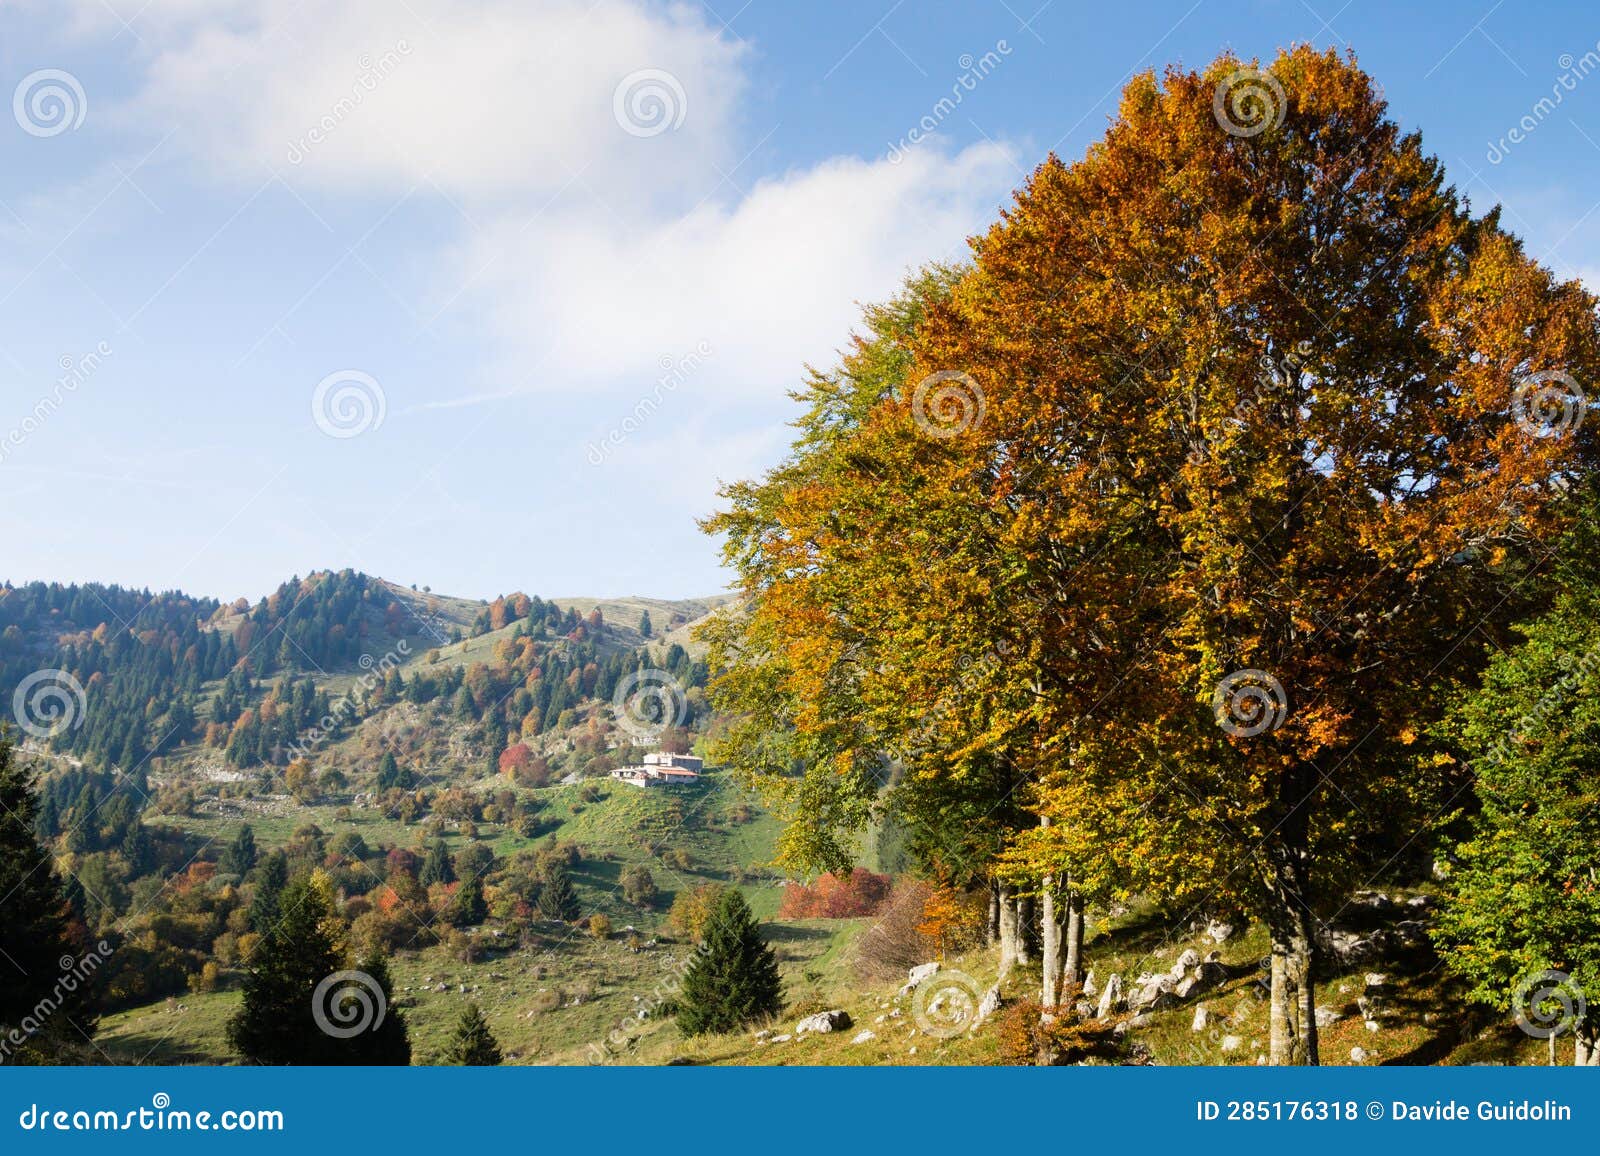 trees in autumn season background. autumn lansdscape